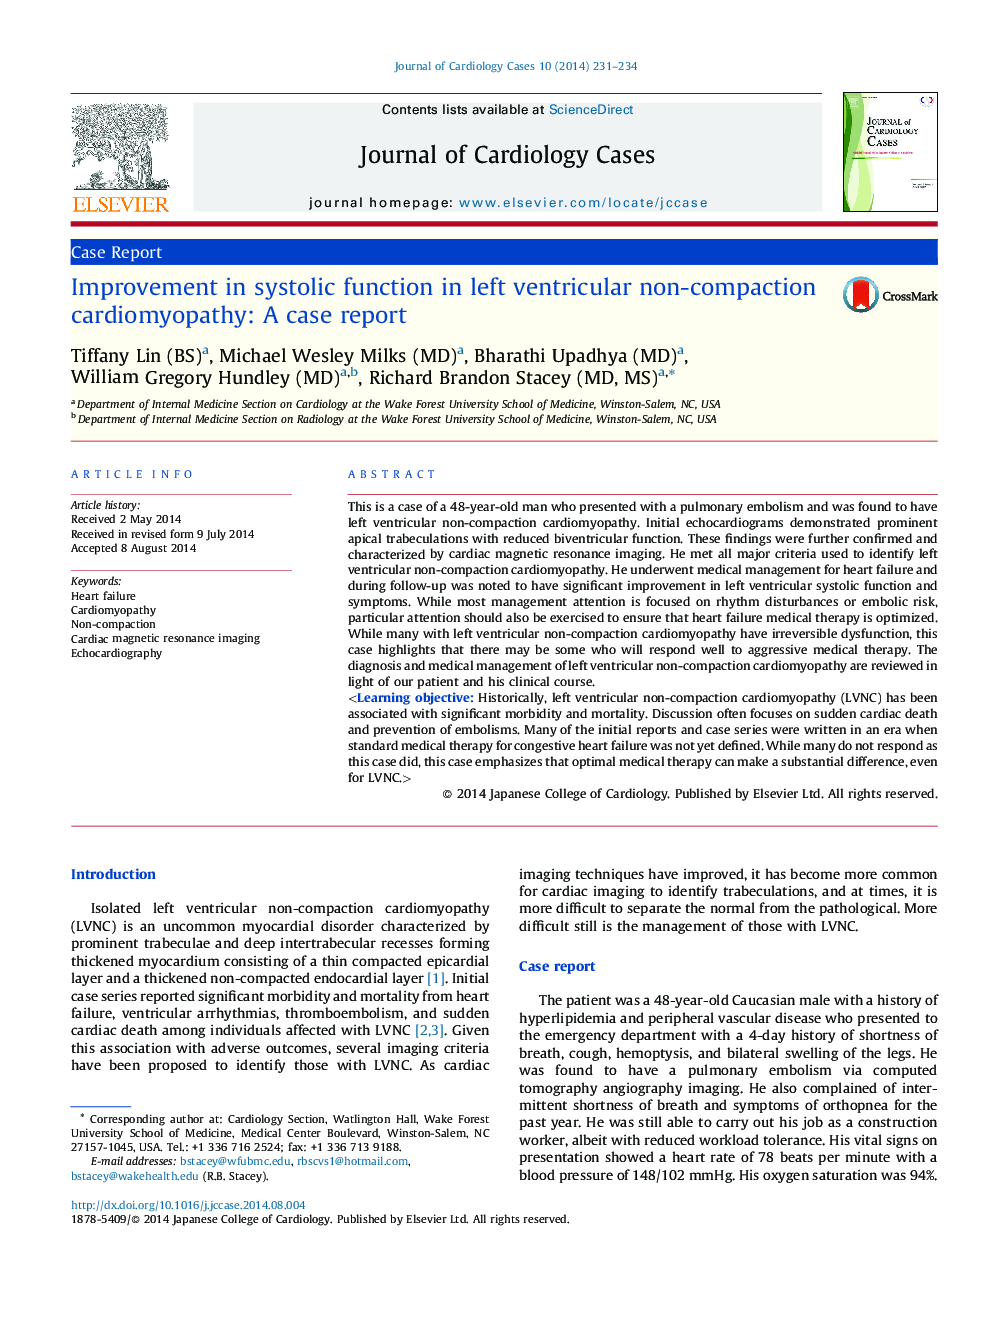 بهبود عملکرد سیستماتیک در کاردیومیوپاتی غیر تراکمی بطن چپ: گزارش مورد 